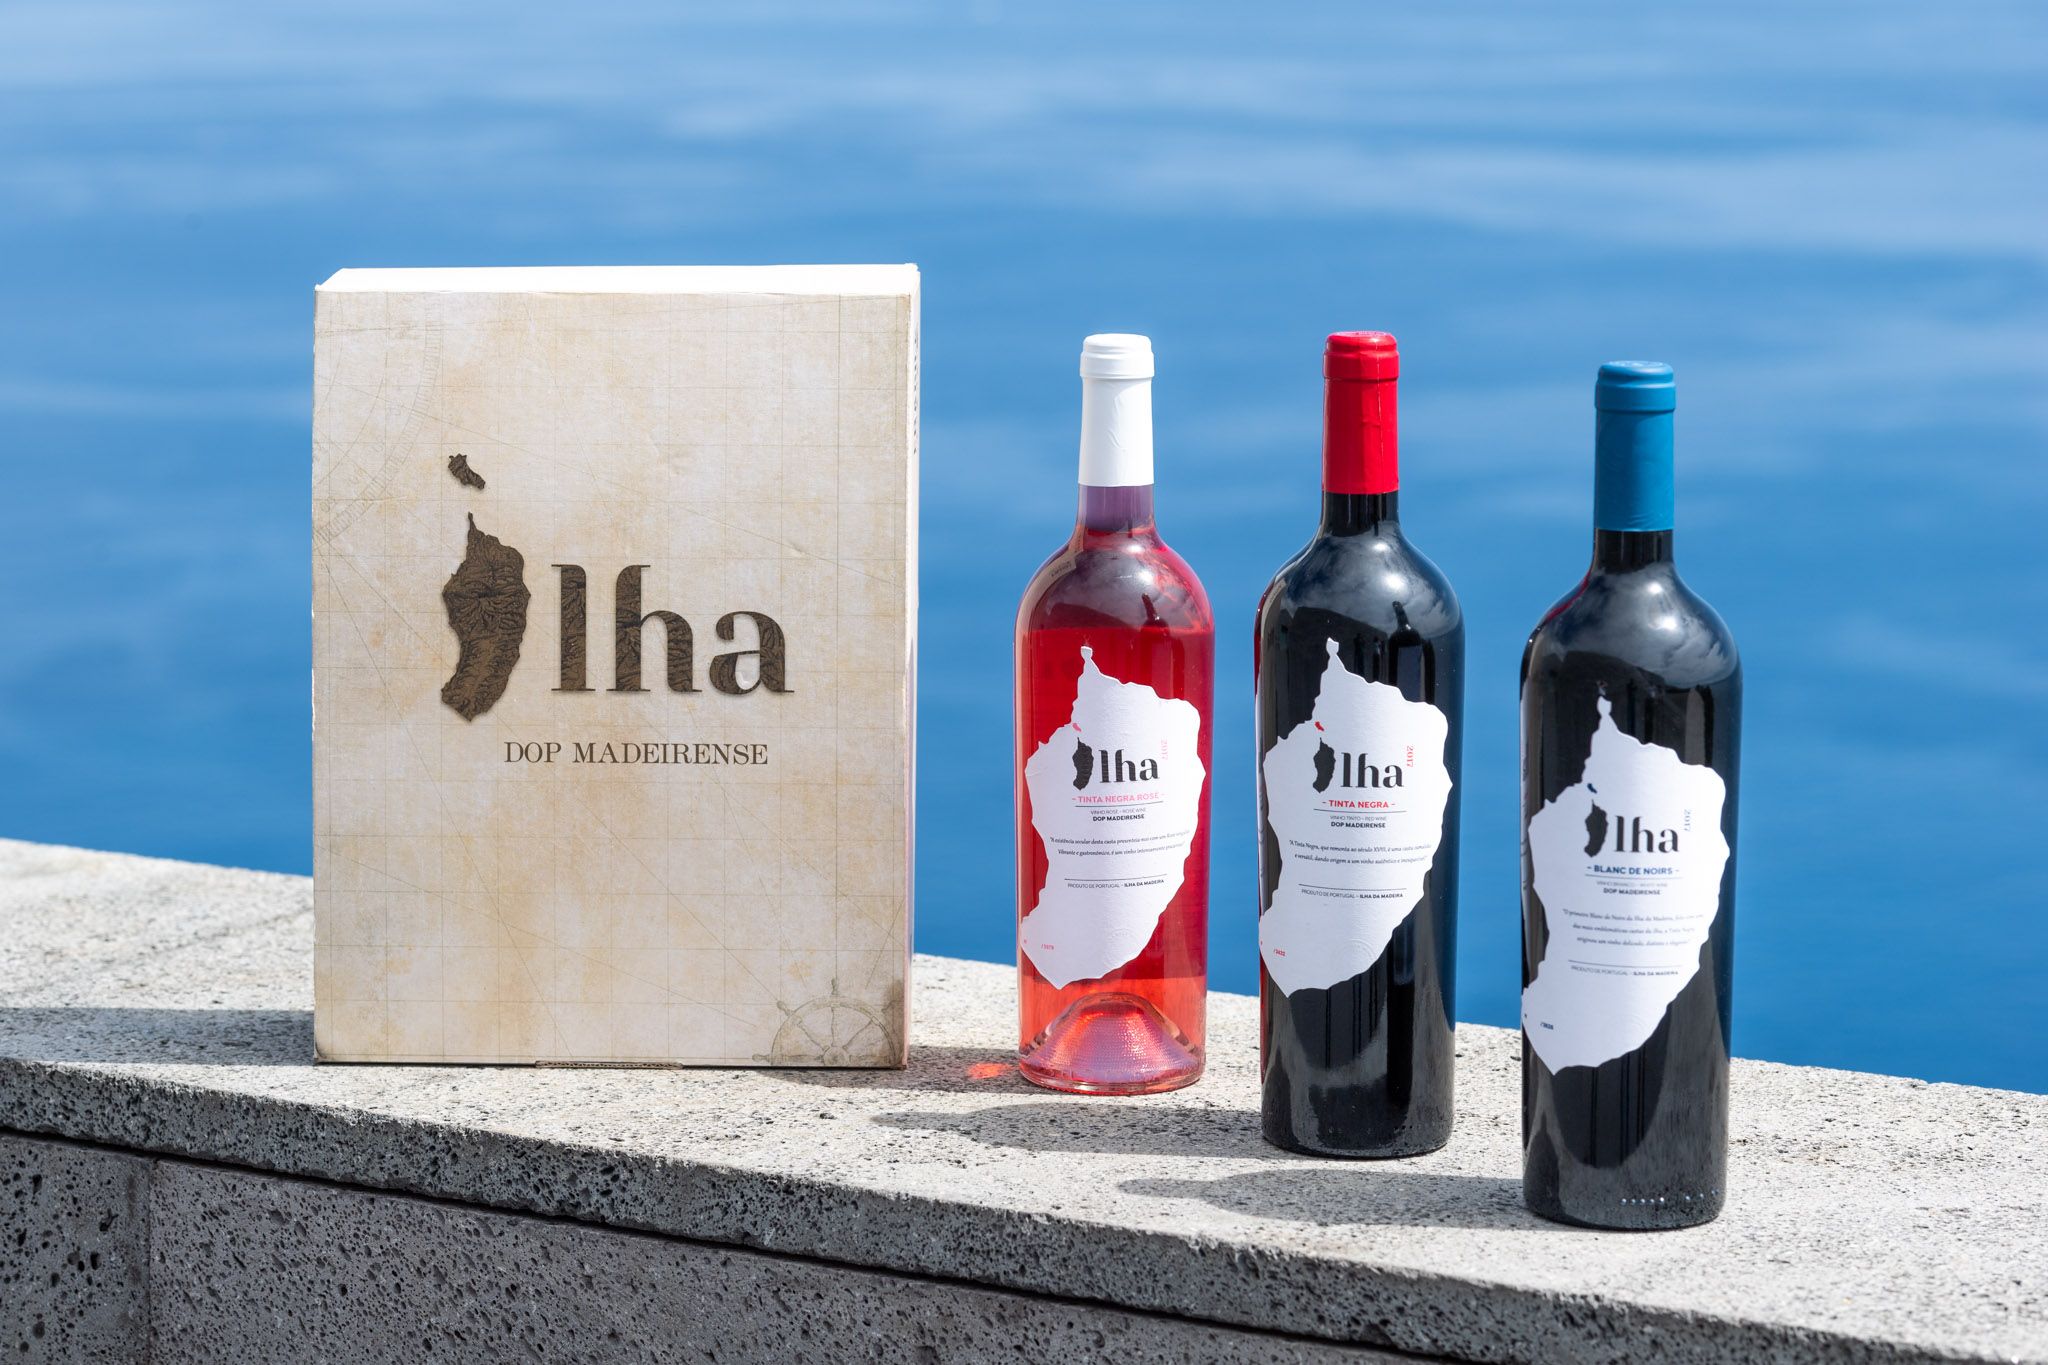 Ilha Tinta Negra Rotwein 2017 aus Madeira Azoren und Madeira | Rot | O Vinho